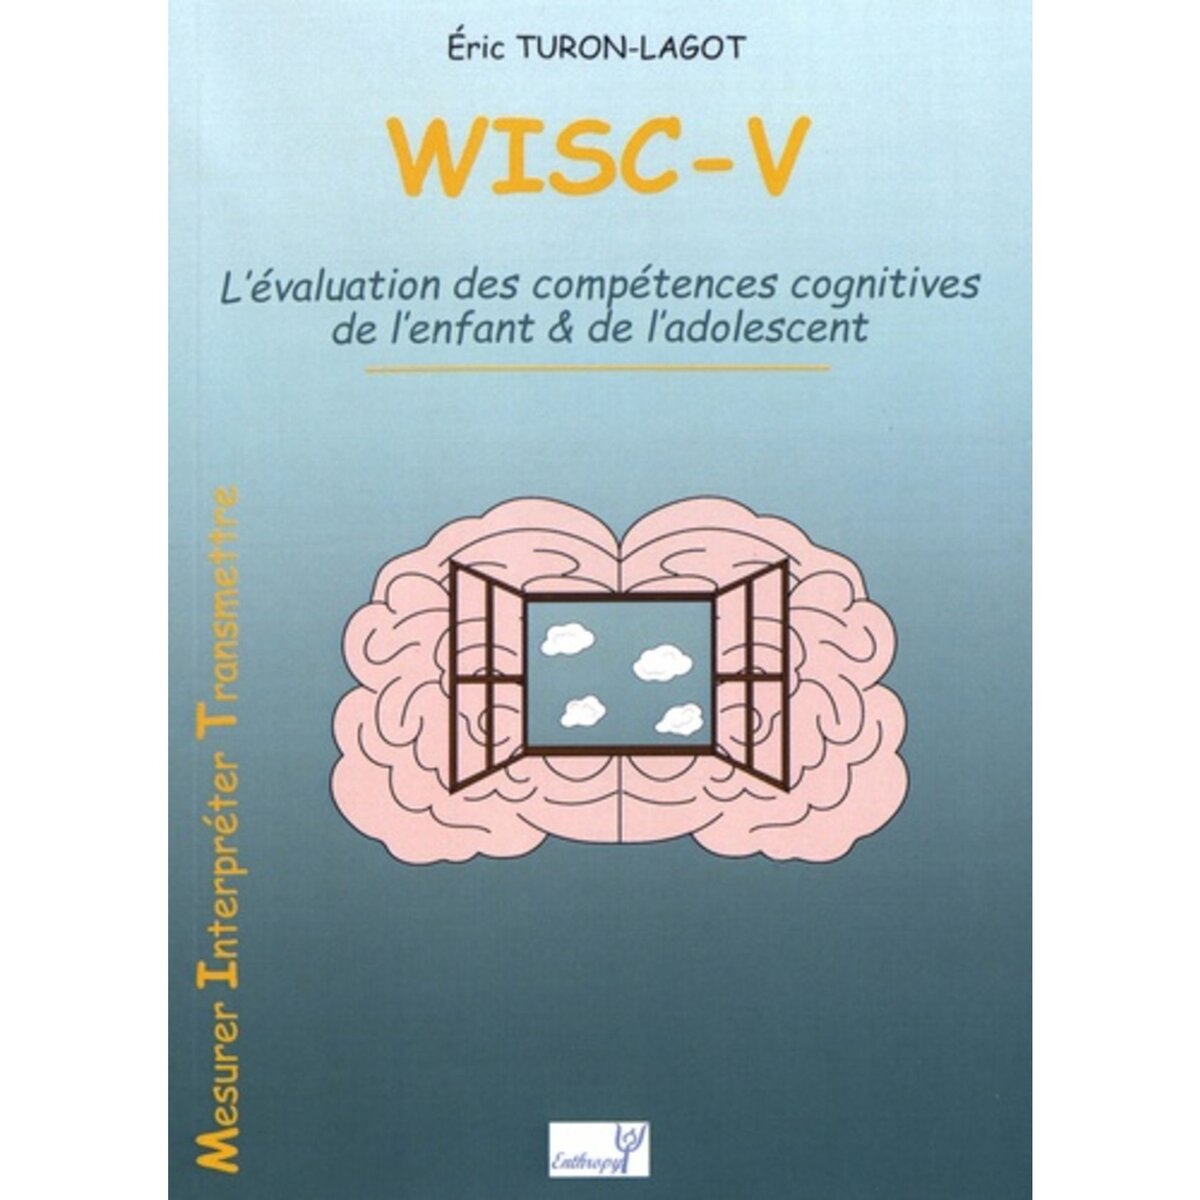  WISC-V. L'EVALUATION DES COMPETENCES COGNITIVES DE L'ENFANT & DE L'ADOLESCENT, Turon-Lagot Eric